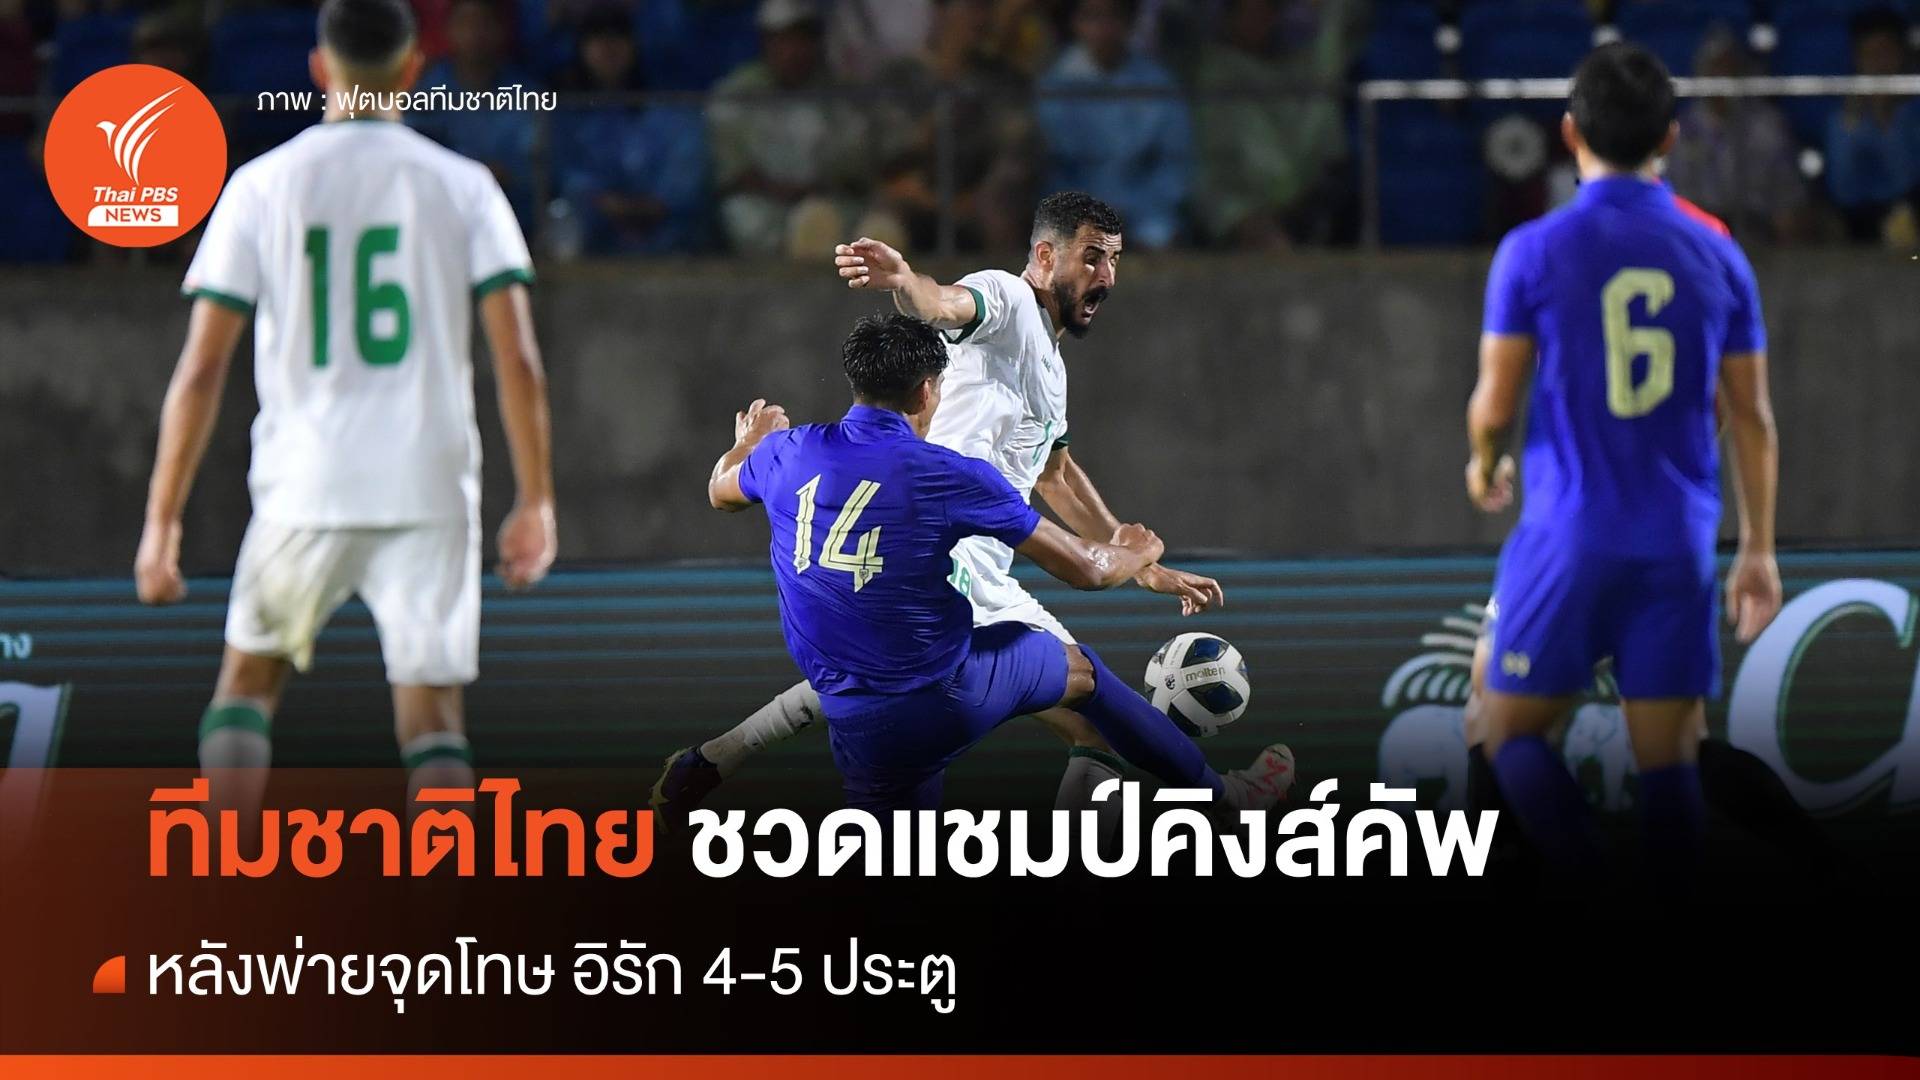 ทีมชาติไทยชวดแชมป์คิงส์คัพ พ่ายจุดโทษ อิรัก 4-5 ประตู